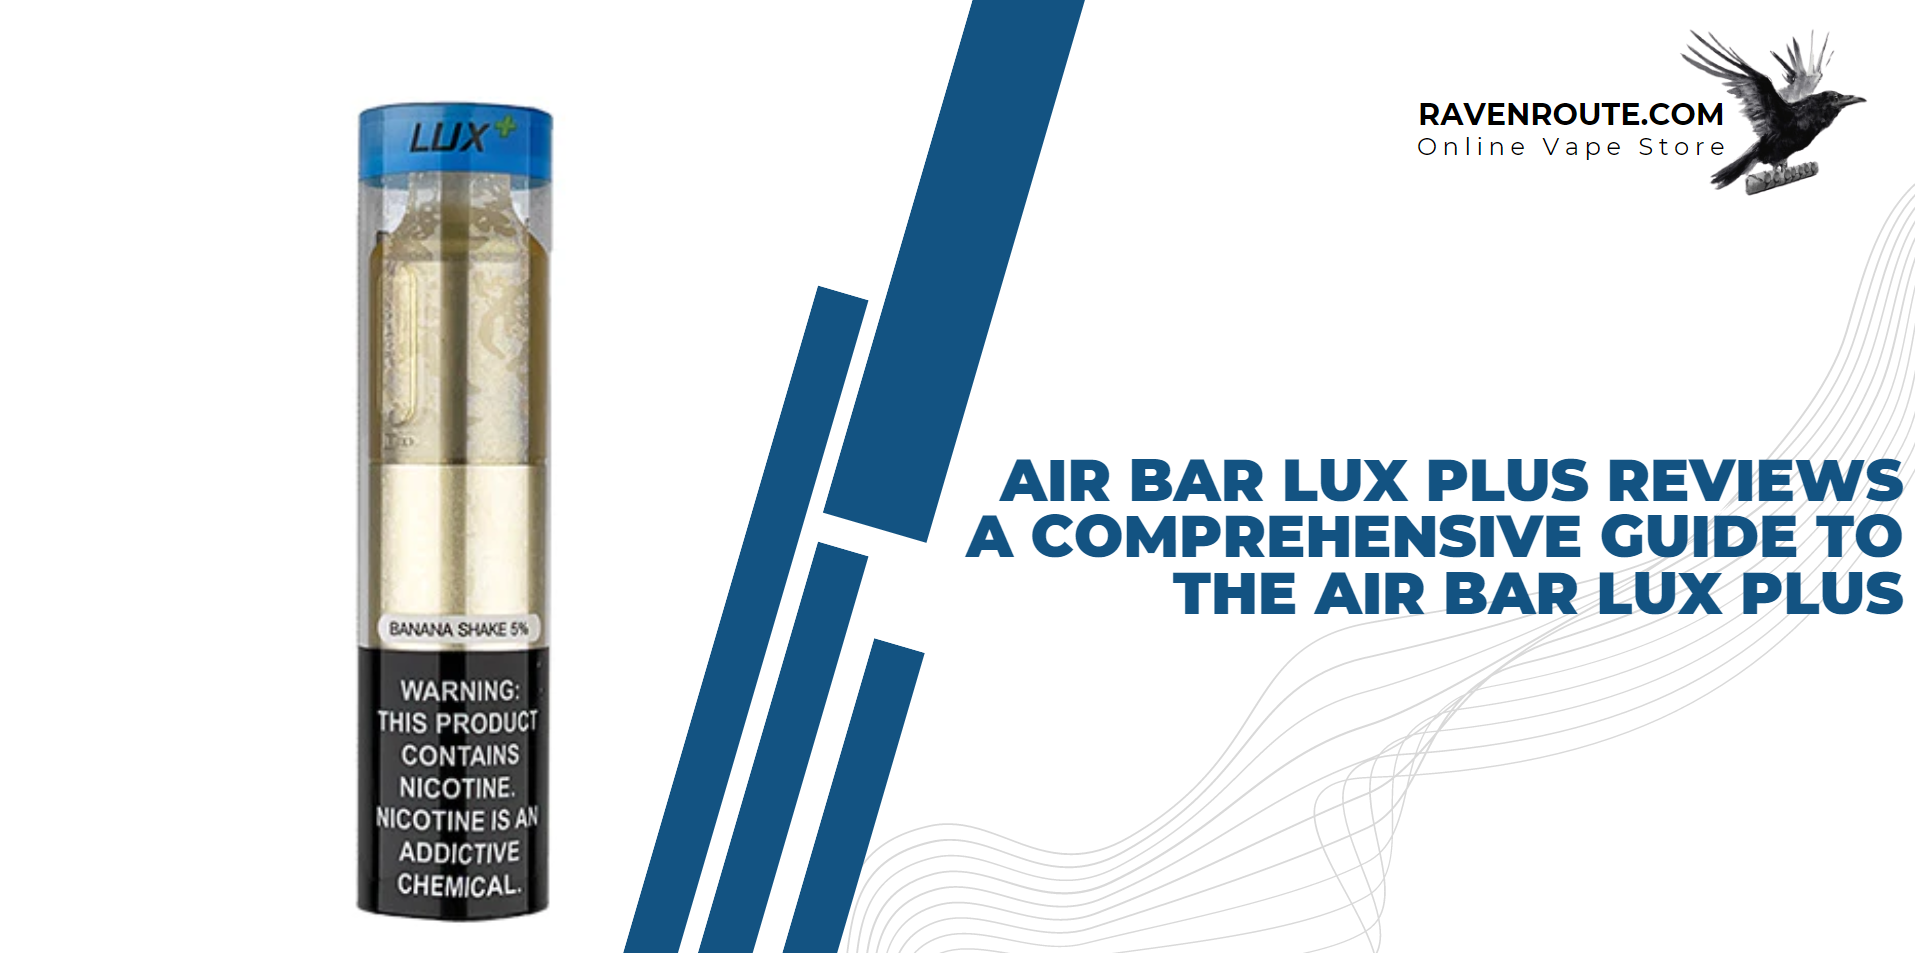 Air Bar Lux Plus Reviews - A Comprehensive Guide to the Air Bar Lux Plus